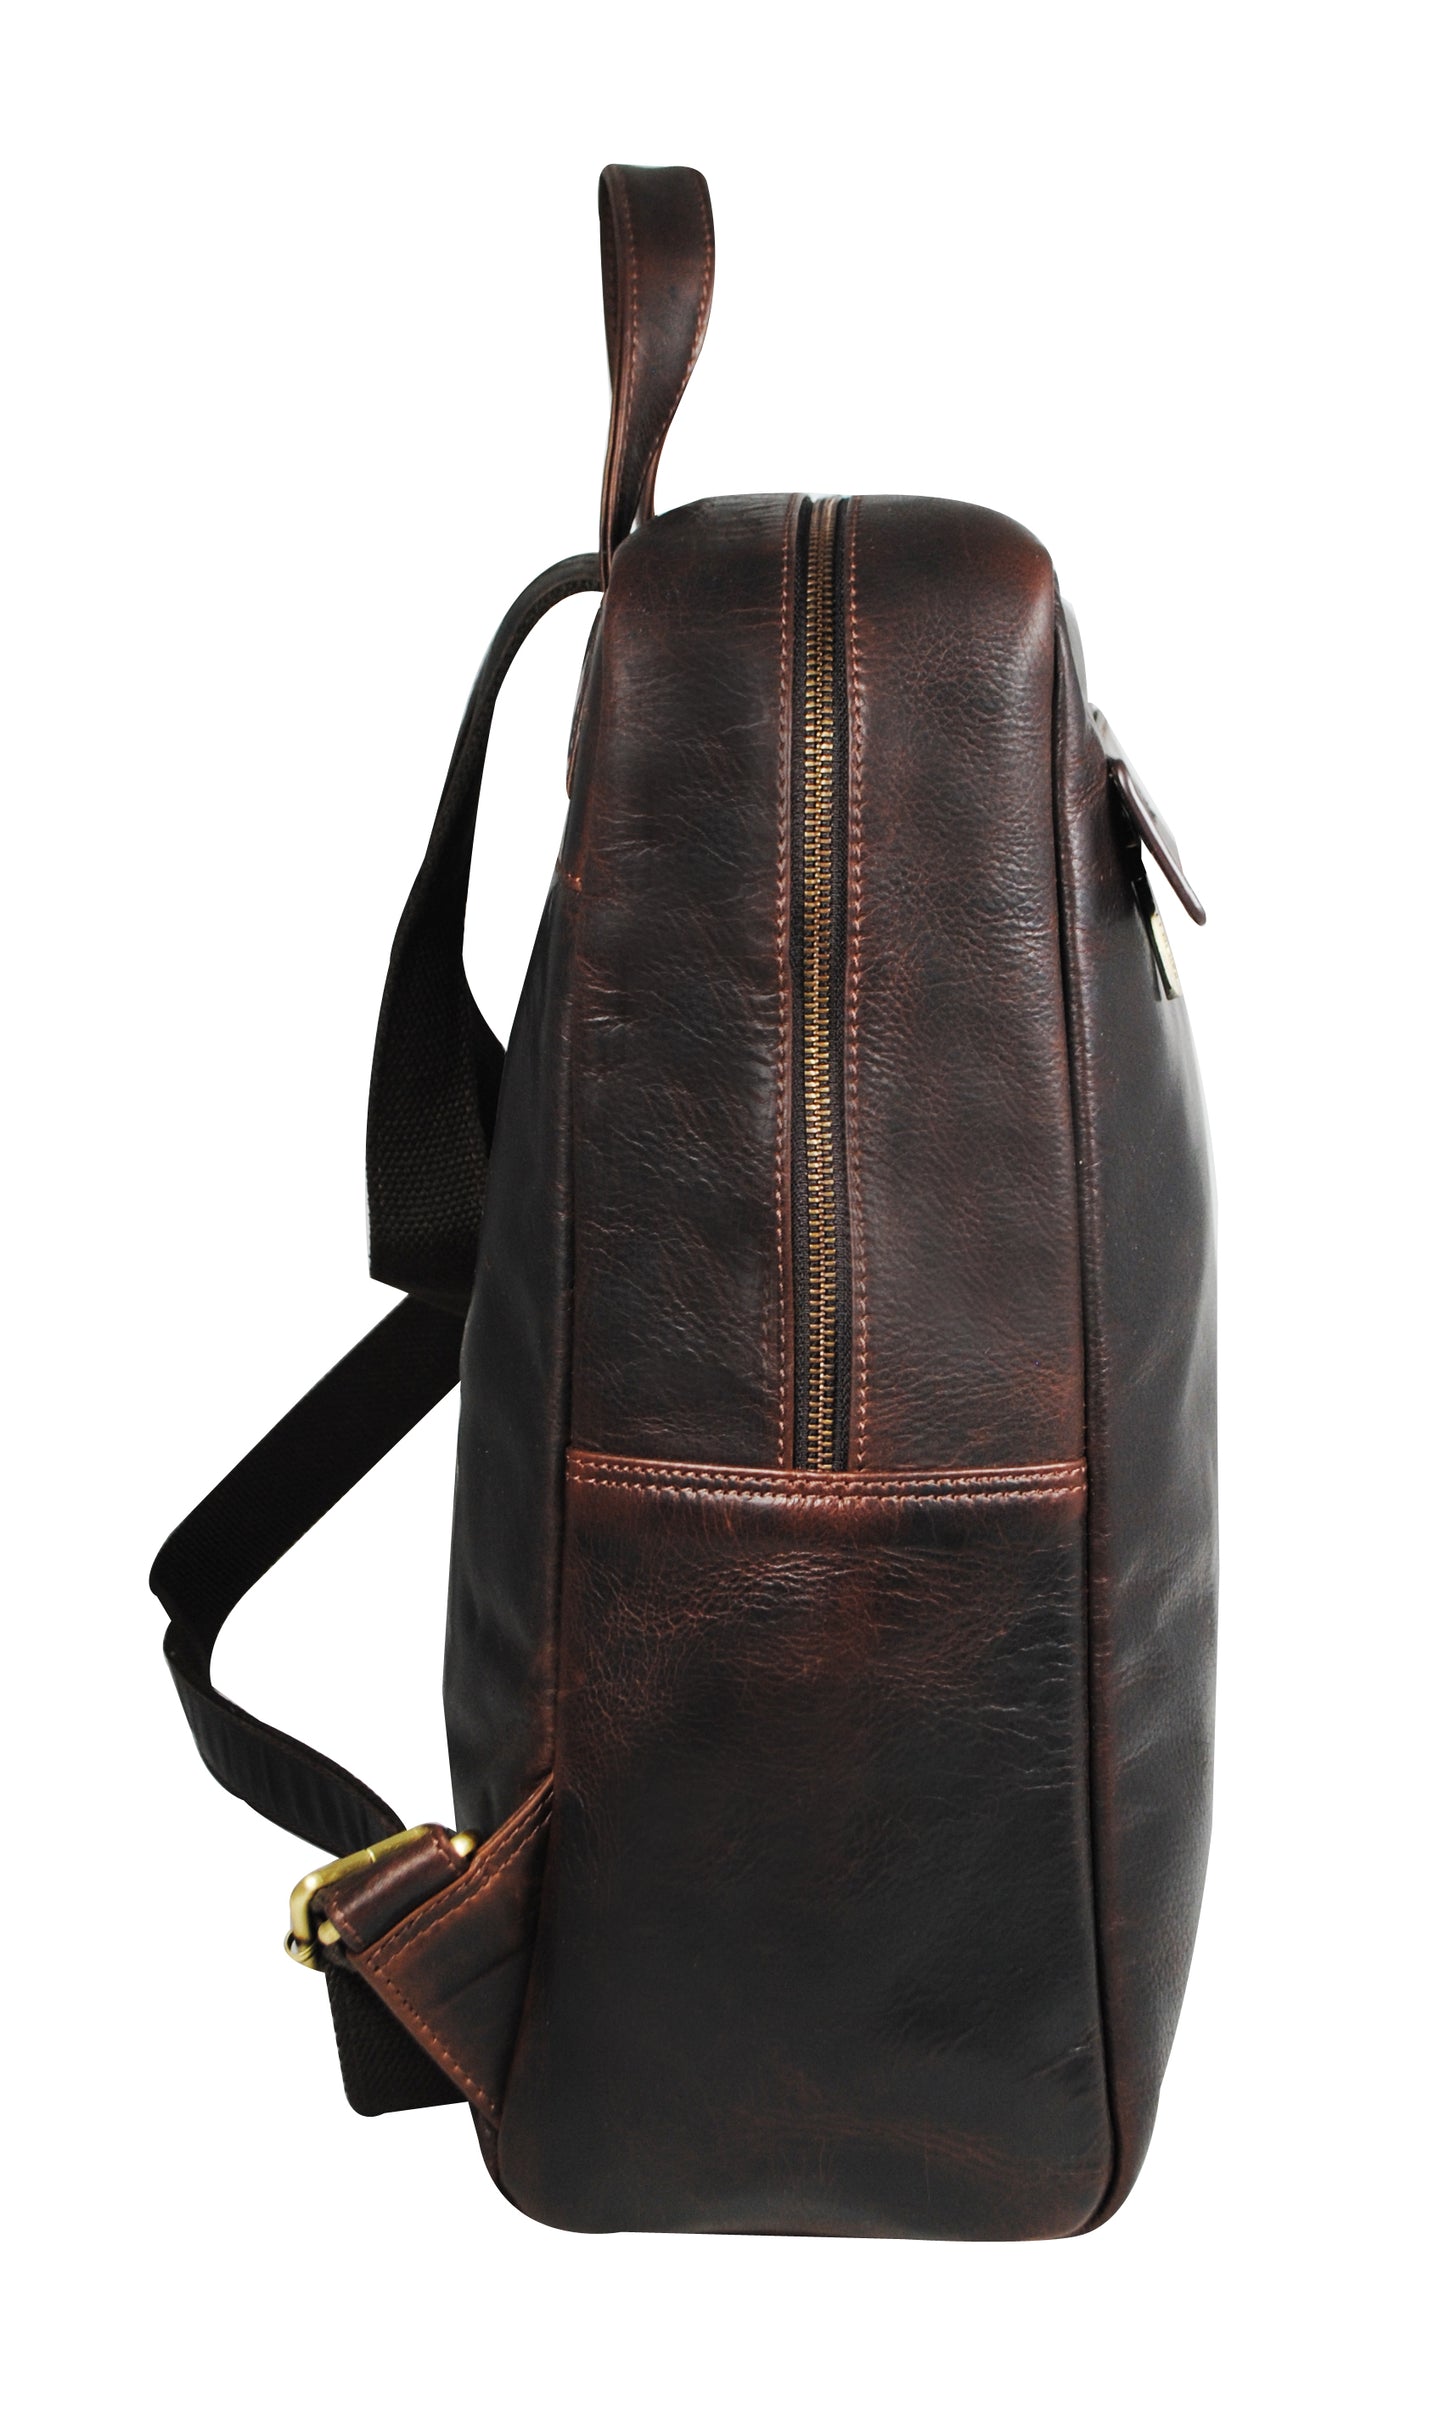 Calfnero Men's Genuine Leather Backpack (801-Brown)